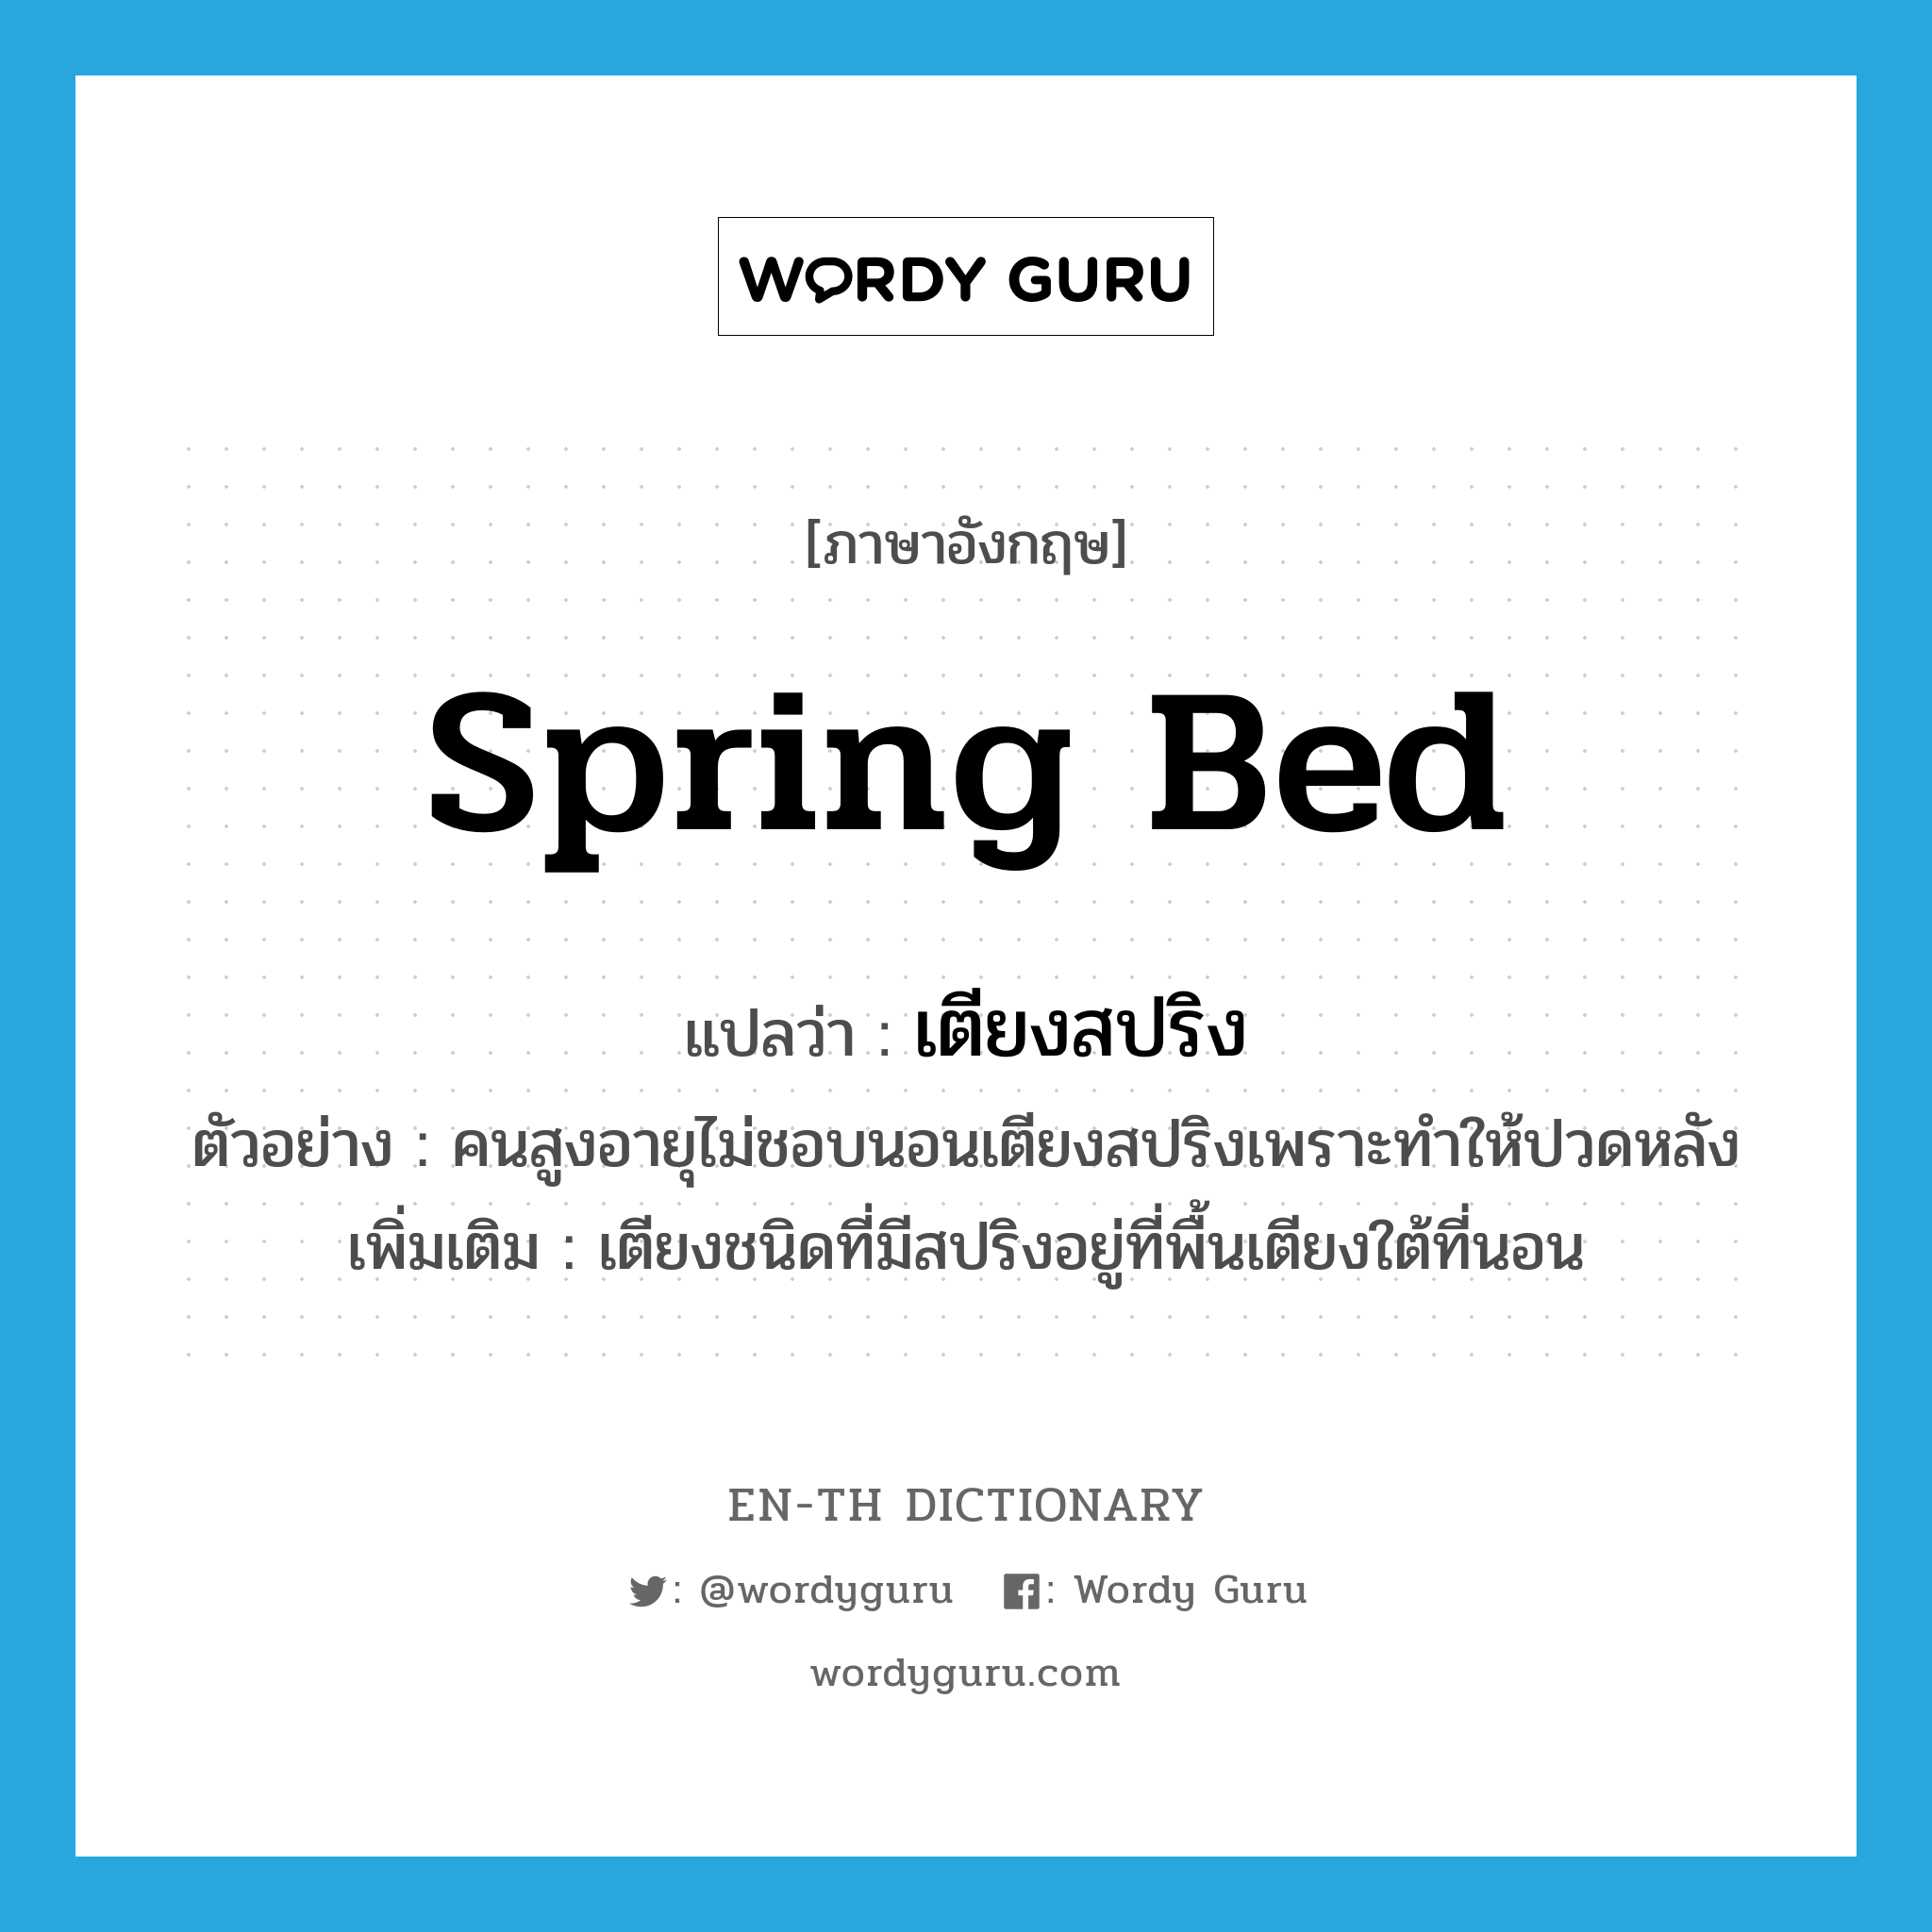 spring bed แปลว่า?, คำศัพท์ภาษาอังกฤษ spring bed แปลว่า เตียงสปริง ประเภท N ตัวอย่าง คนสูงอายุไม่ชอบนอนเตียงสปริงเพราะทำให้ปวดหลัง เพิ่มเติม เตียงชนิดที่มีสปริงอยู่ที่พื้นเตียงใต้ที่นอน หมวด N